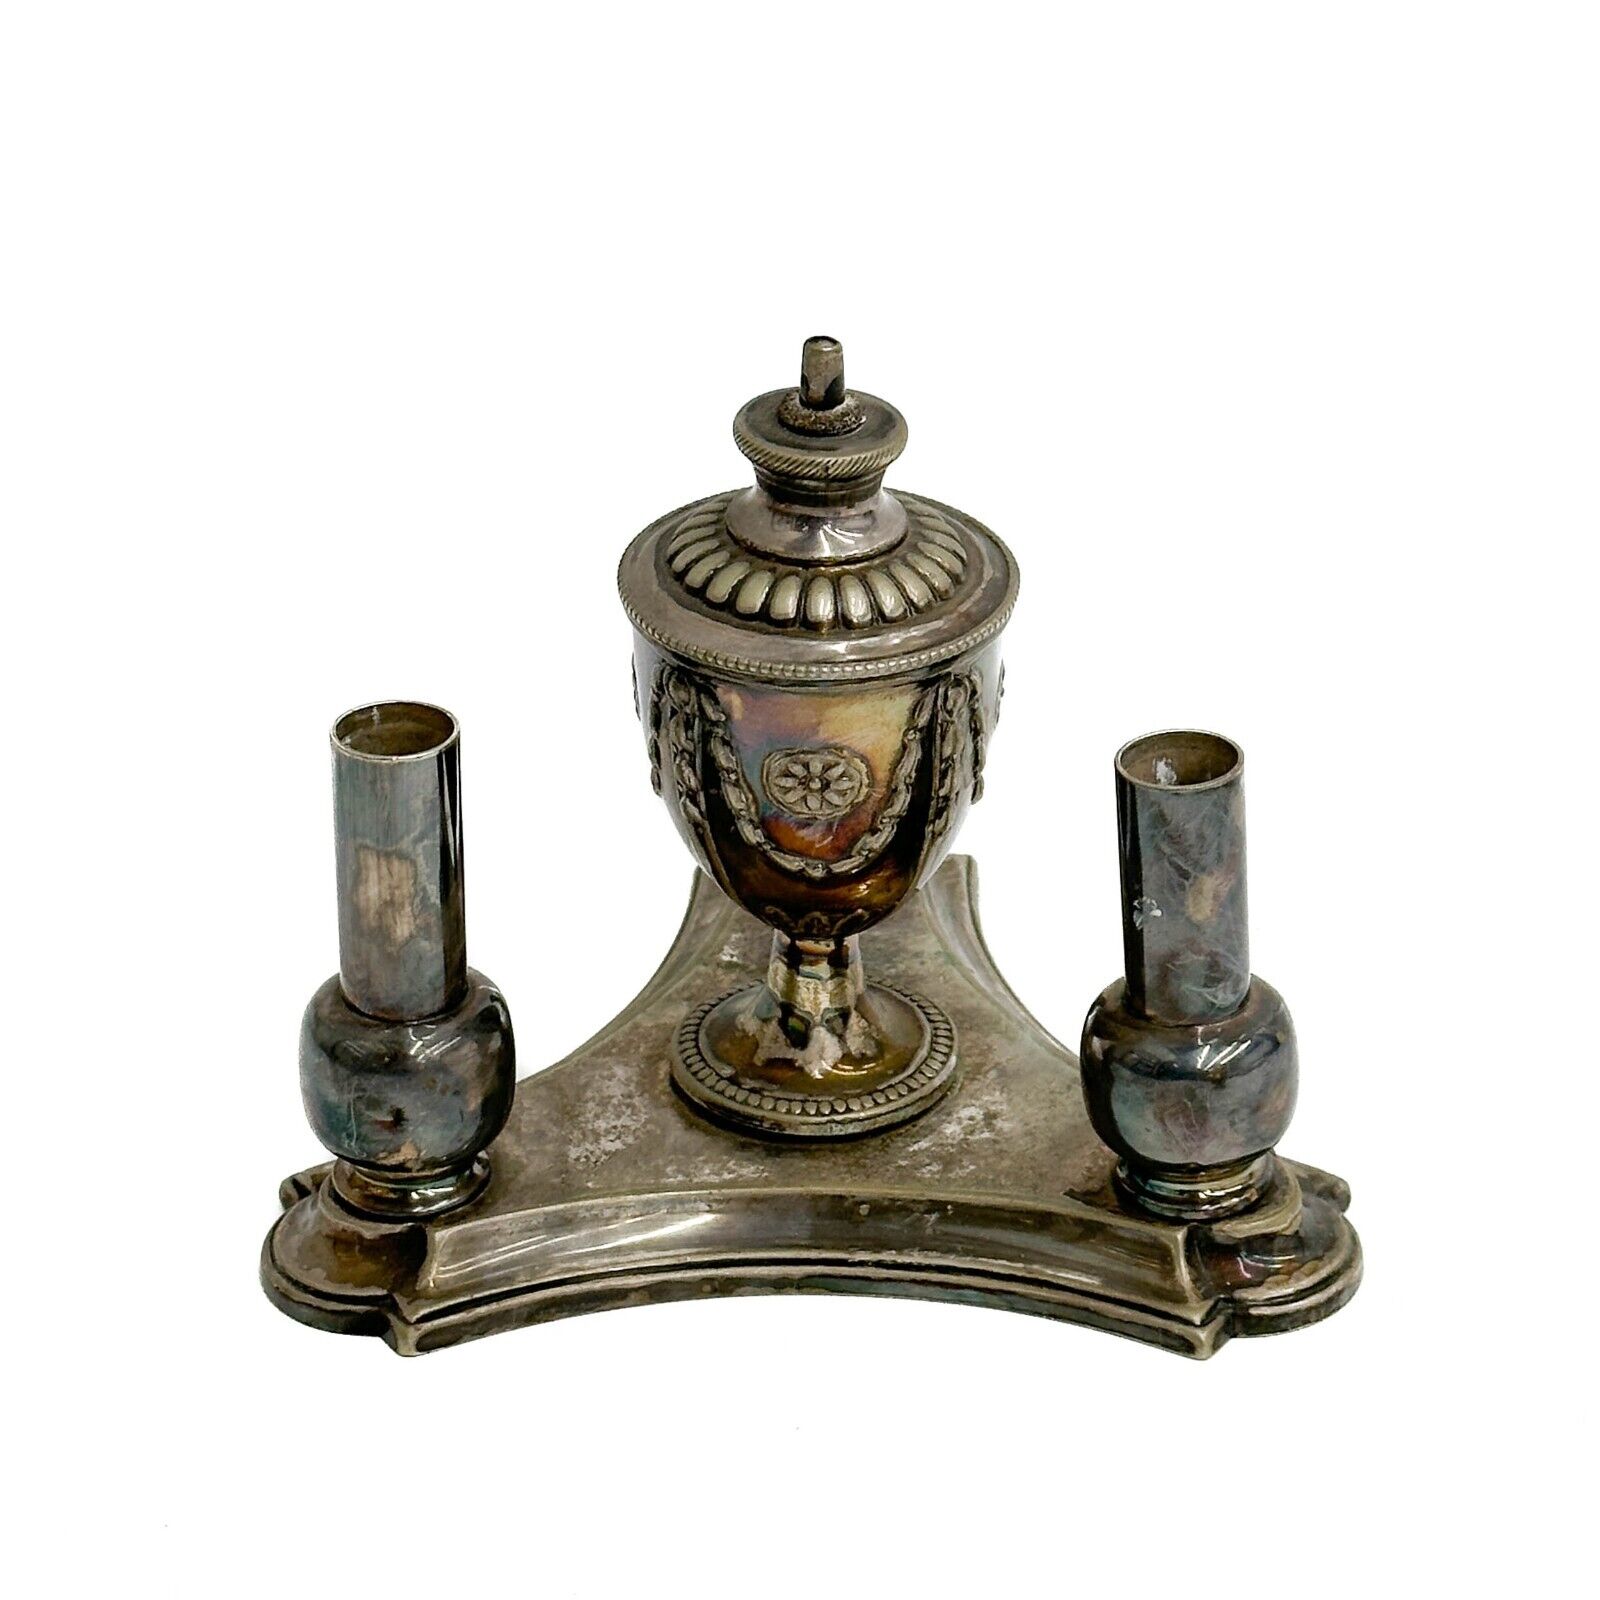 Elkington & Co Silver Plate Cigar Table Lighter circa 1900